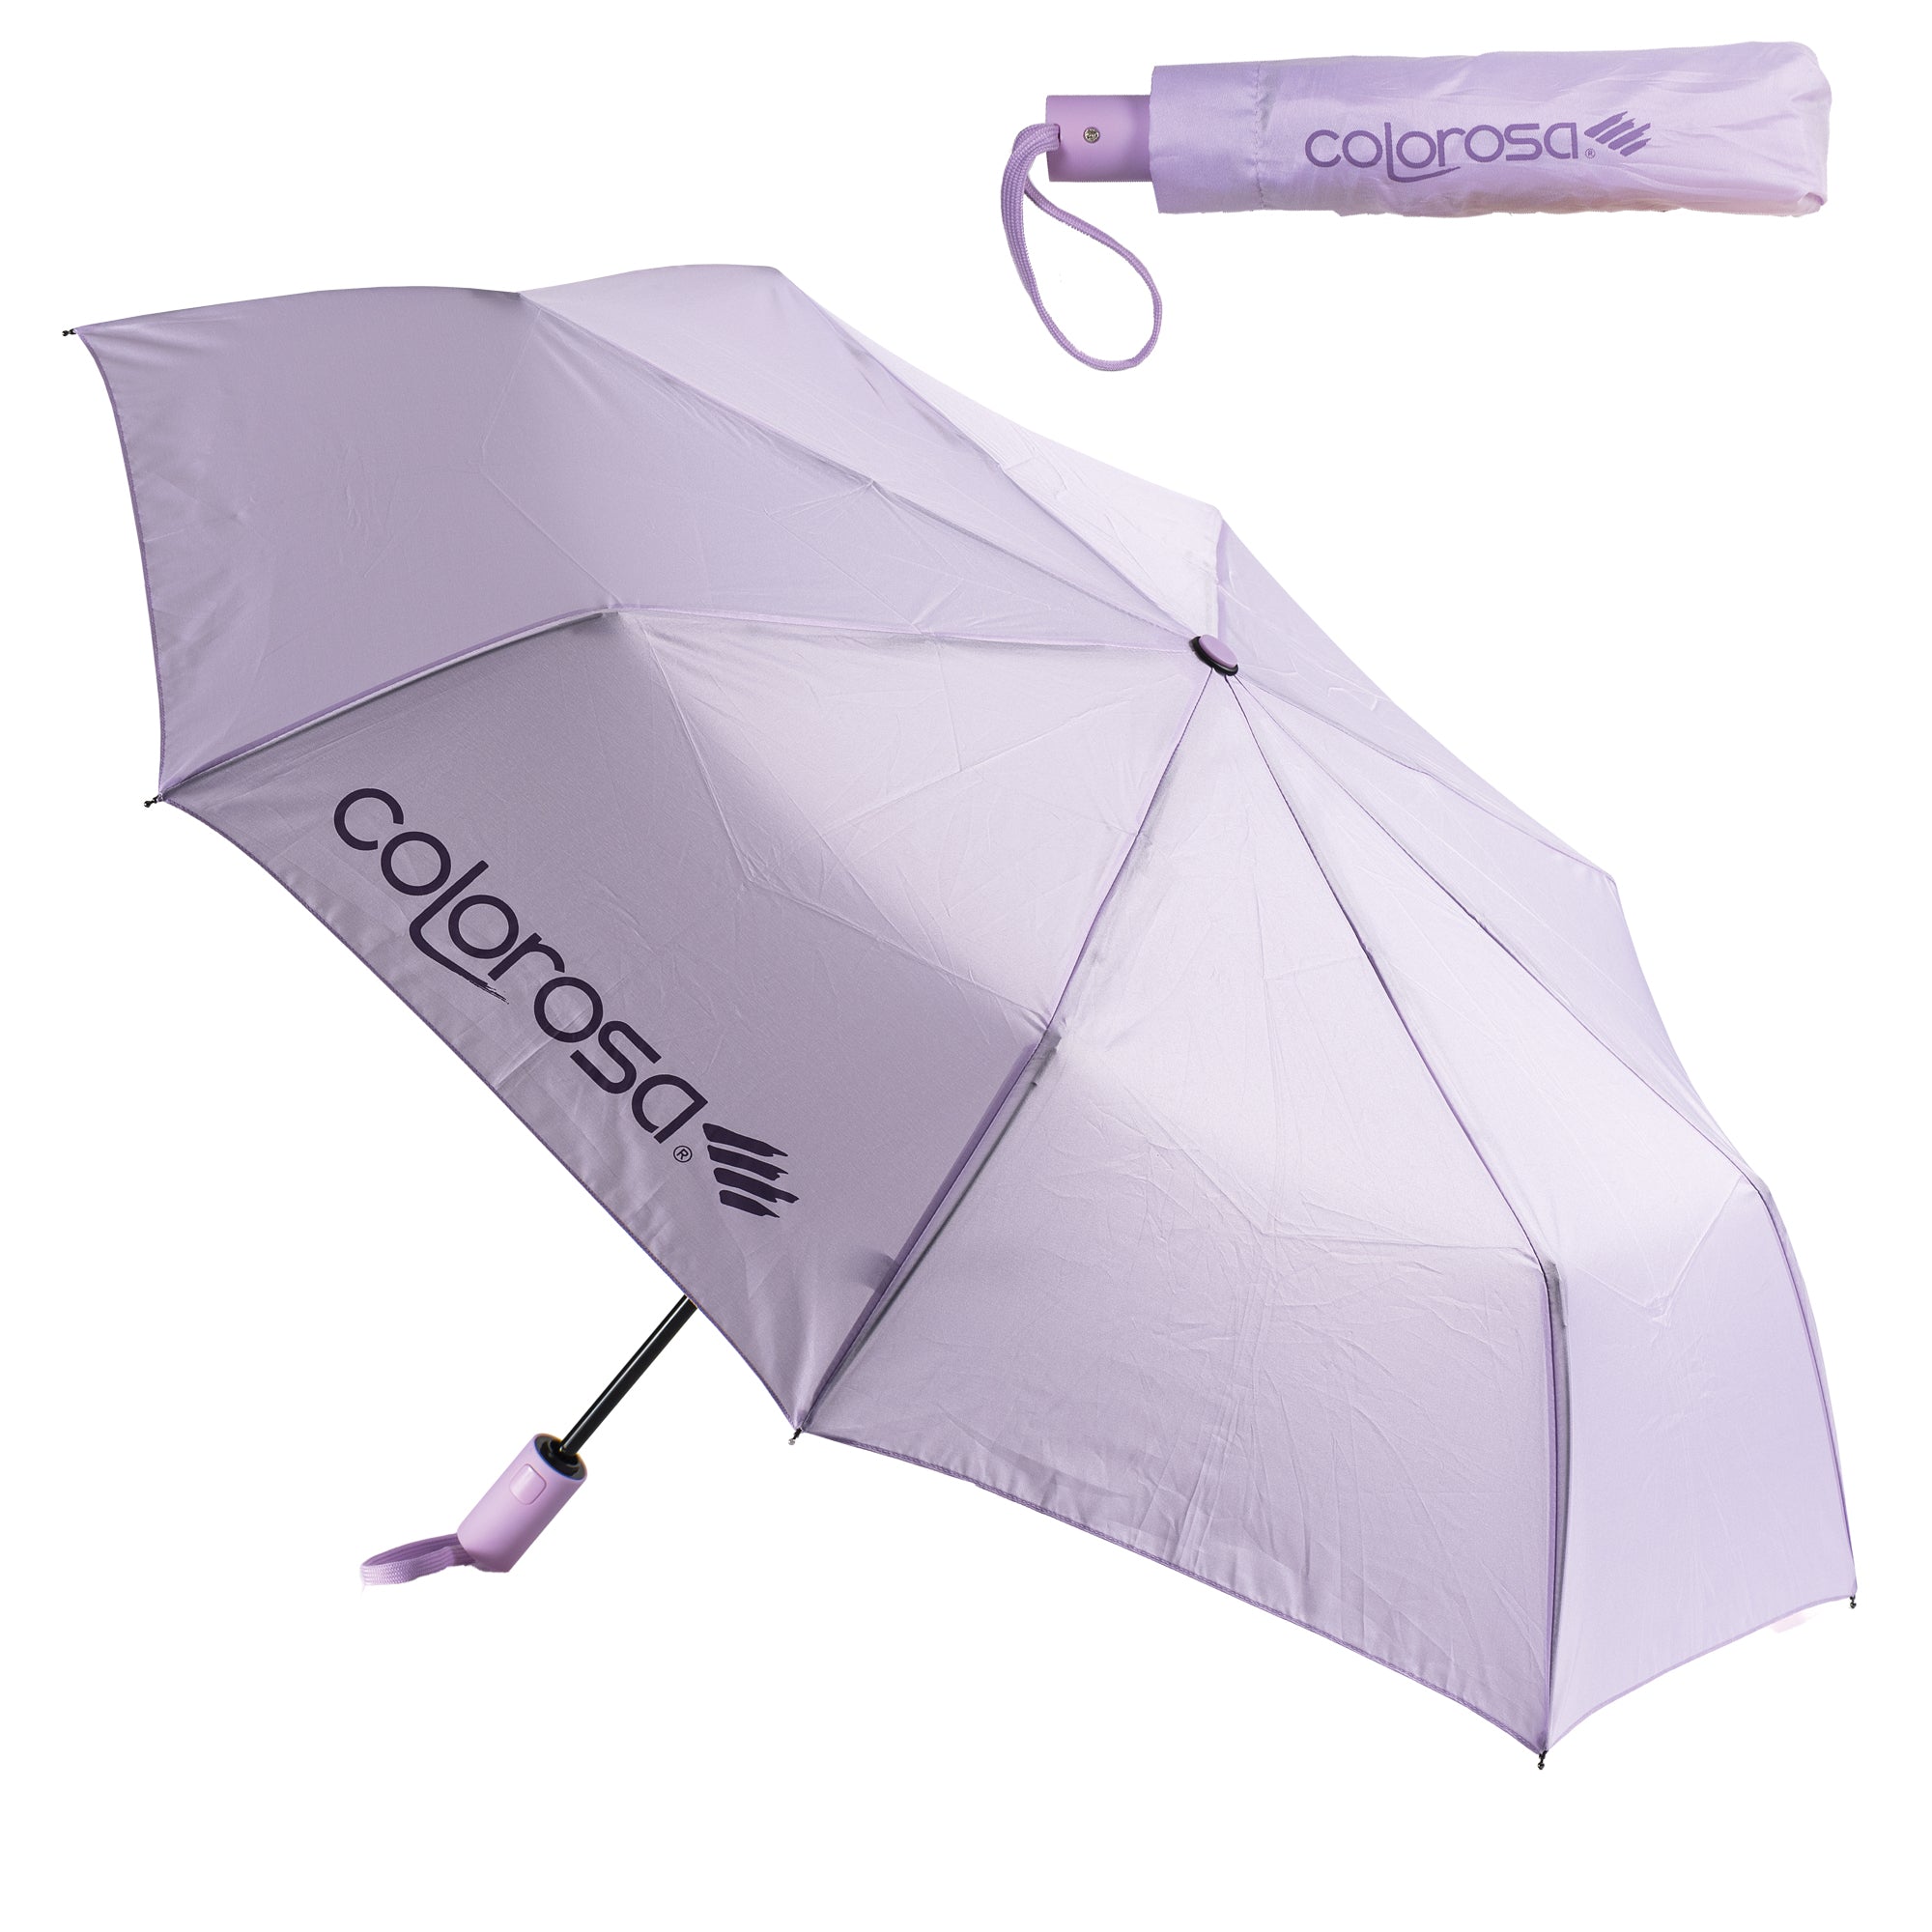 ri-plast-mini-ombrello-automatico-colori-assortiti-colorosa-pastel-riplast